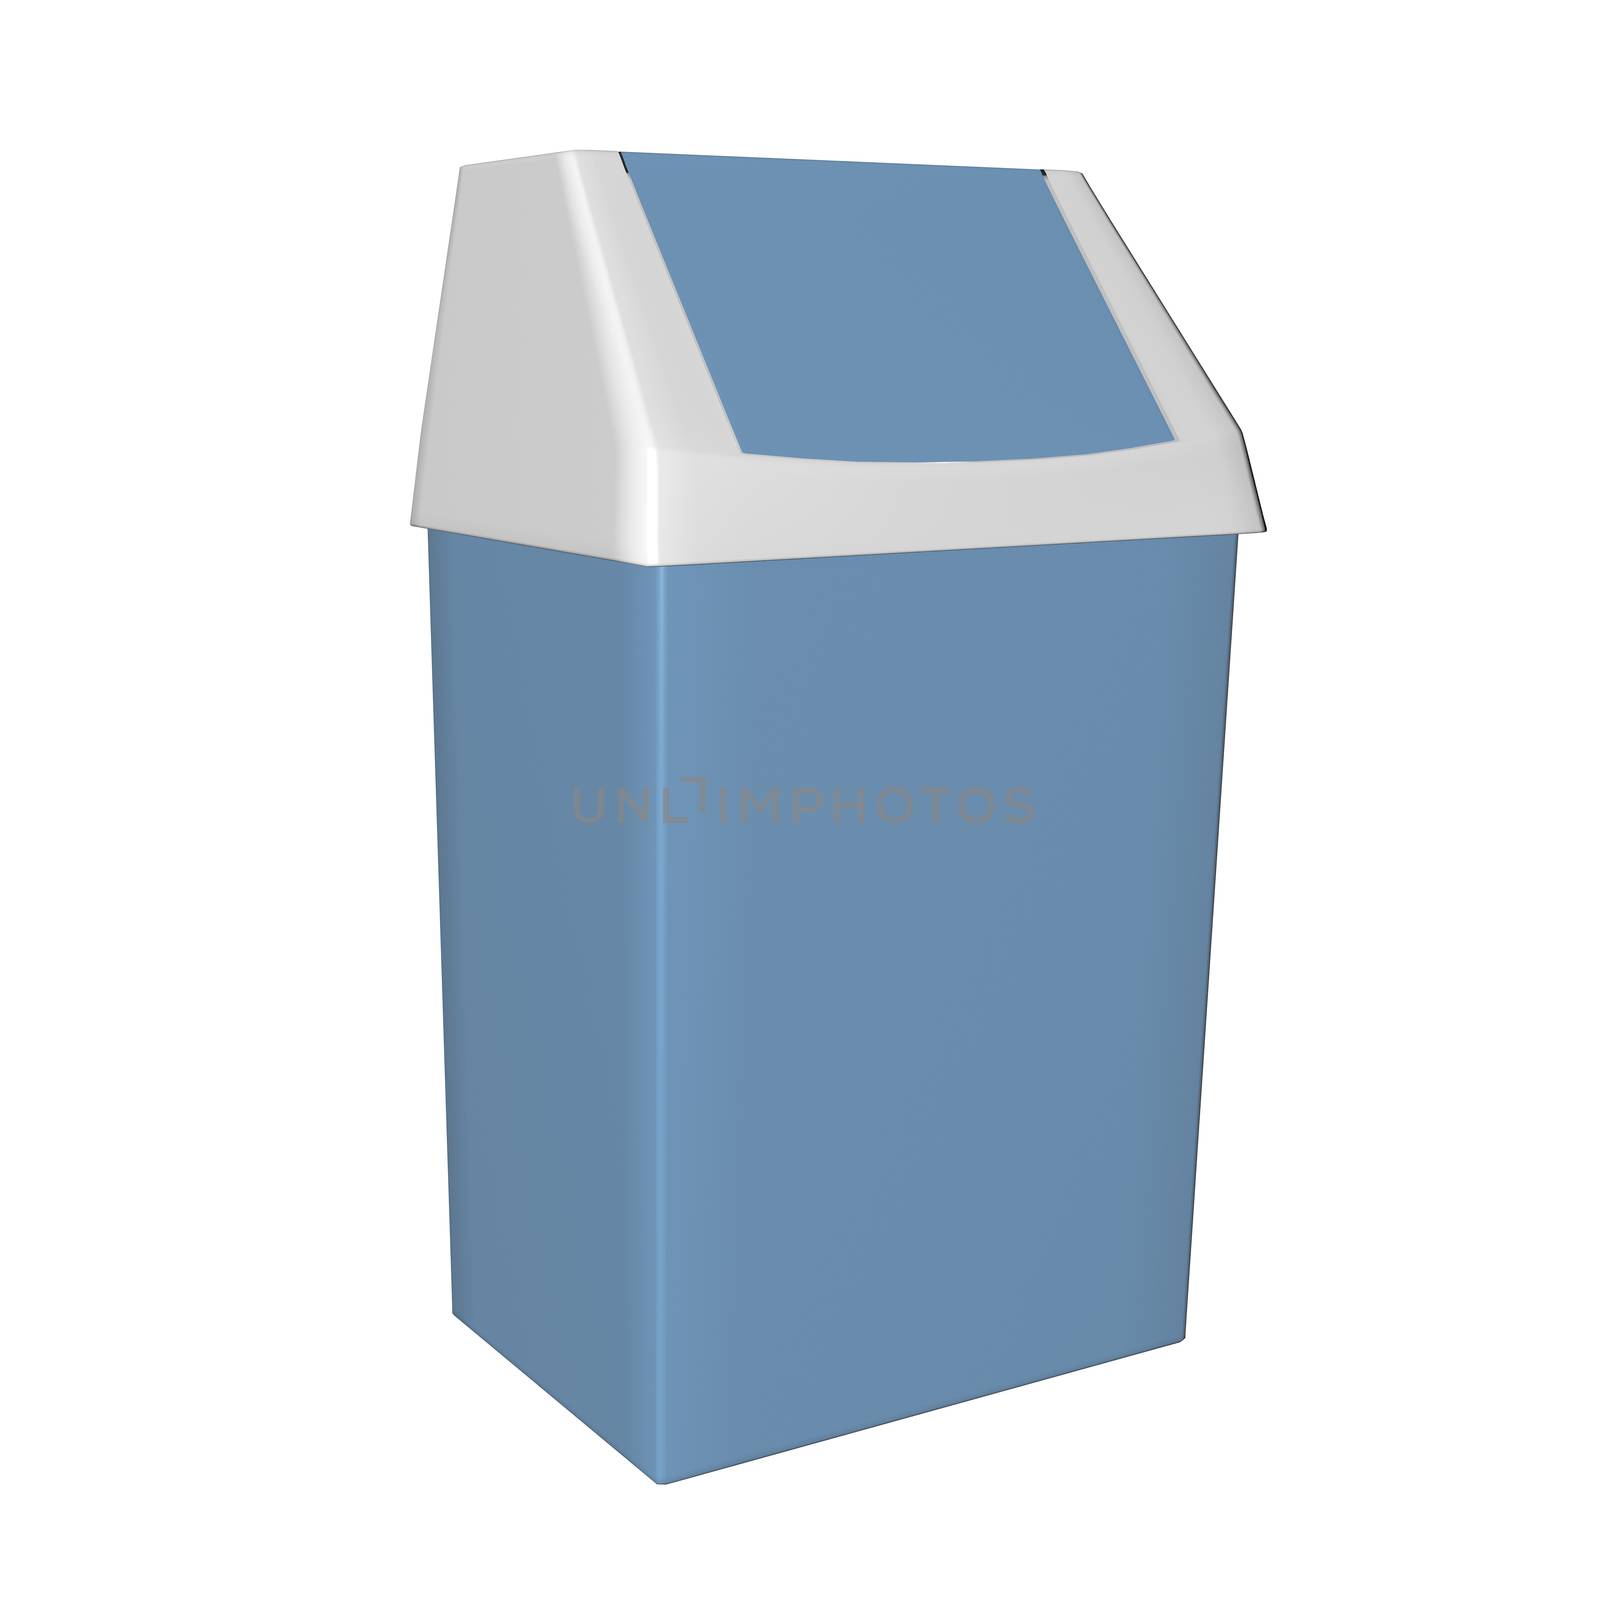 Plastic blue and white trash bin, 3D illustration by Morphart